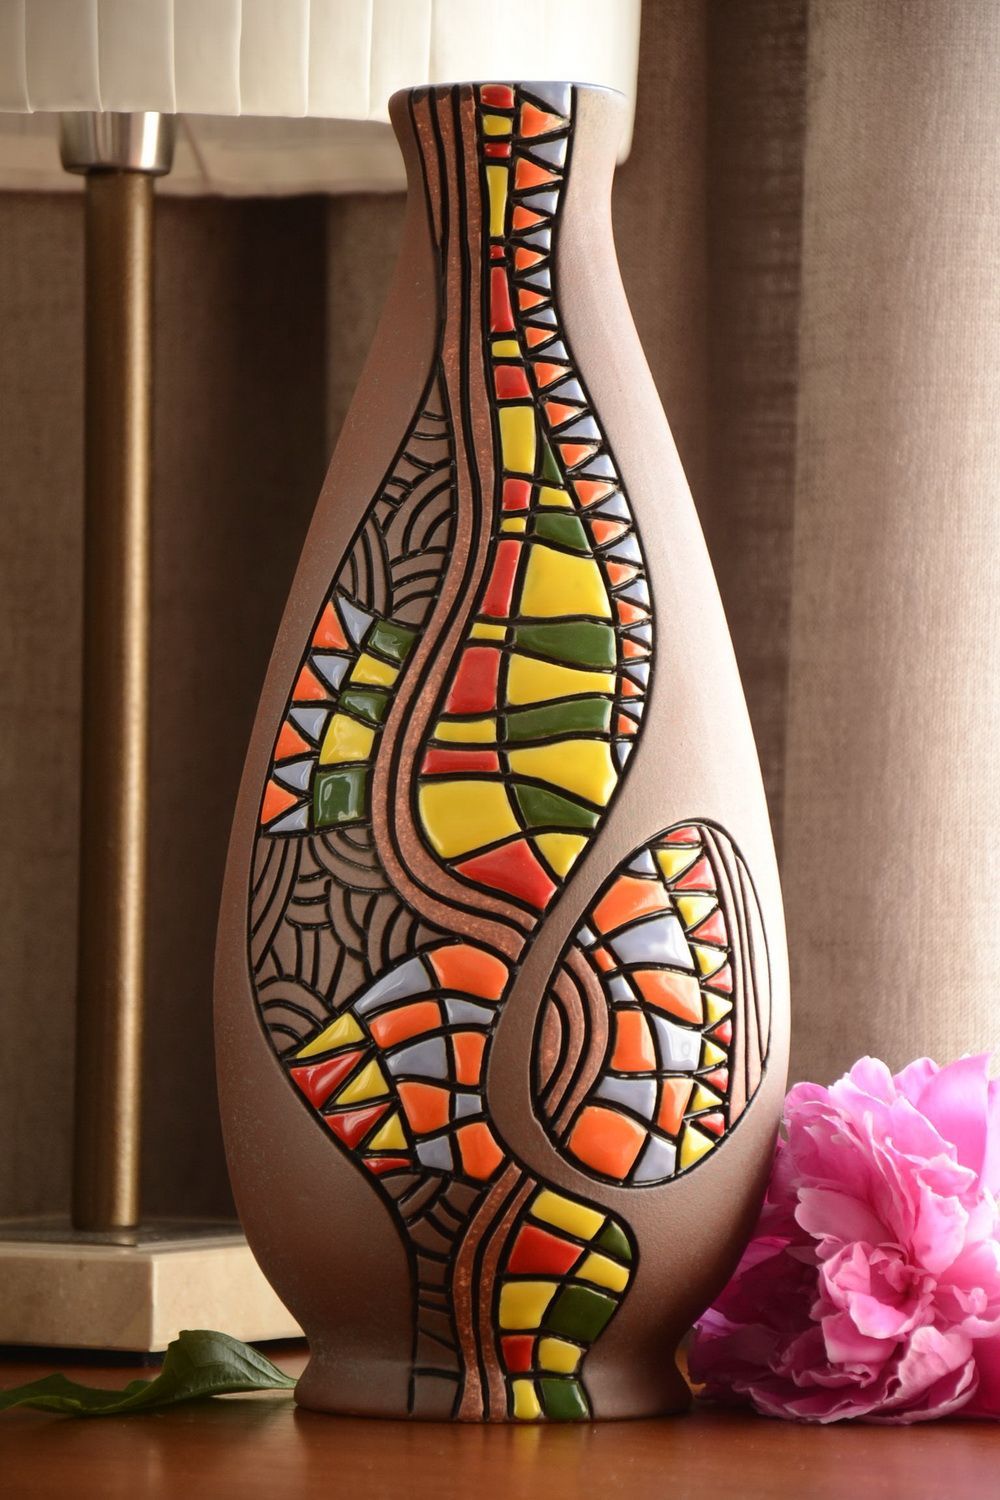 Декоративная ваза высокая красивая объемом 3 литра красивая большая хэнд мейд  фото 1